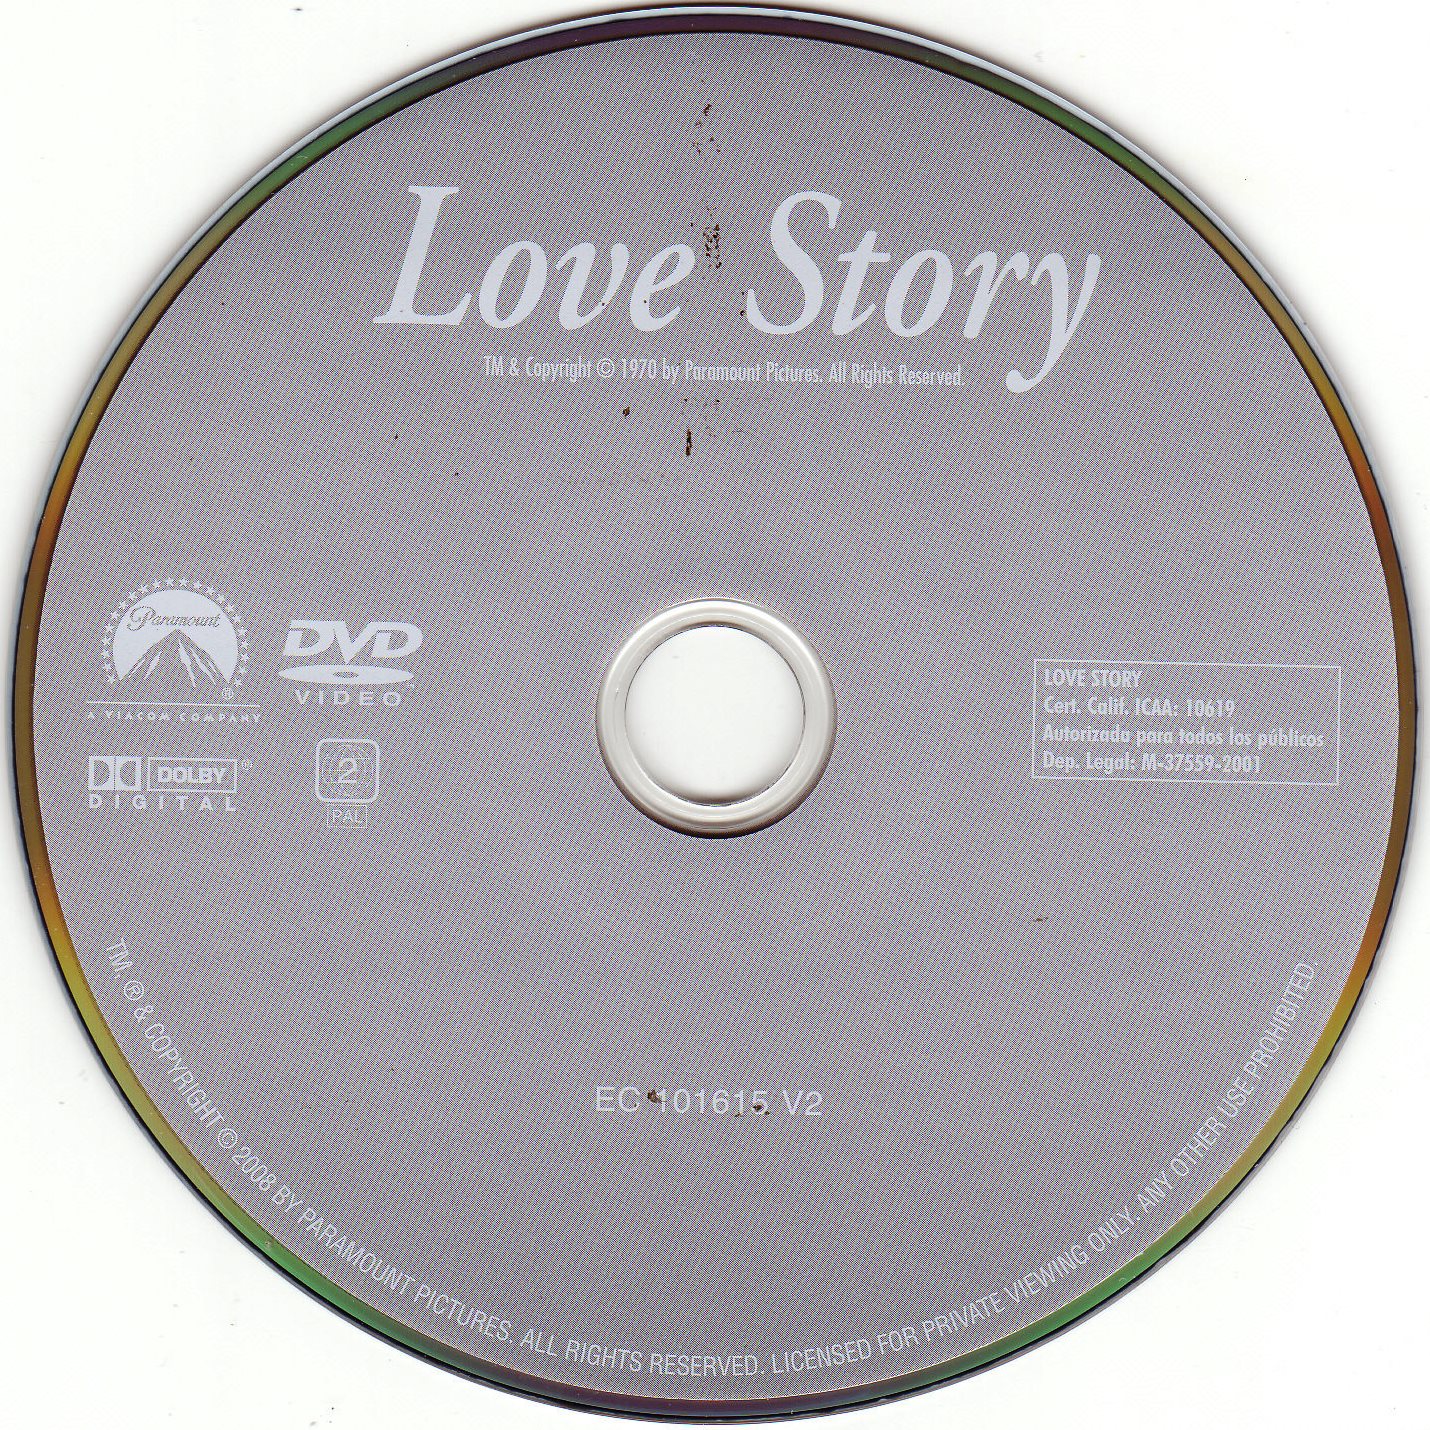 Love story v2